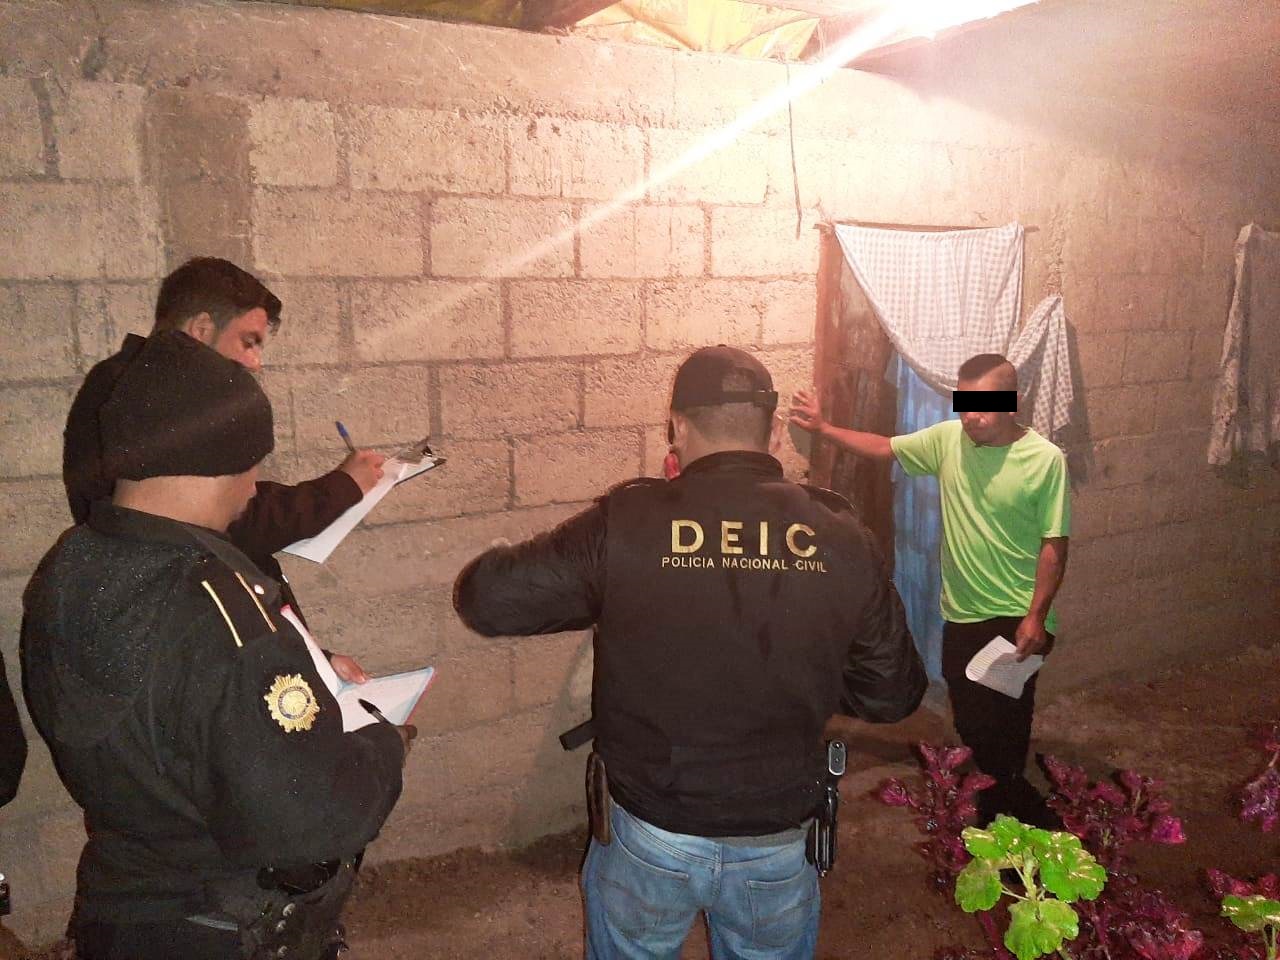 Investigadores de la Policía Nacional Civil notifican a una persona sobre el allanamiento en la vivienda. (Foto Prensa Libre: Cortesía)  